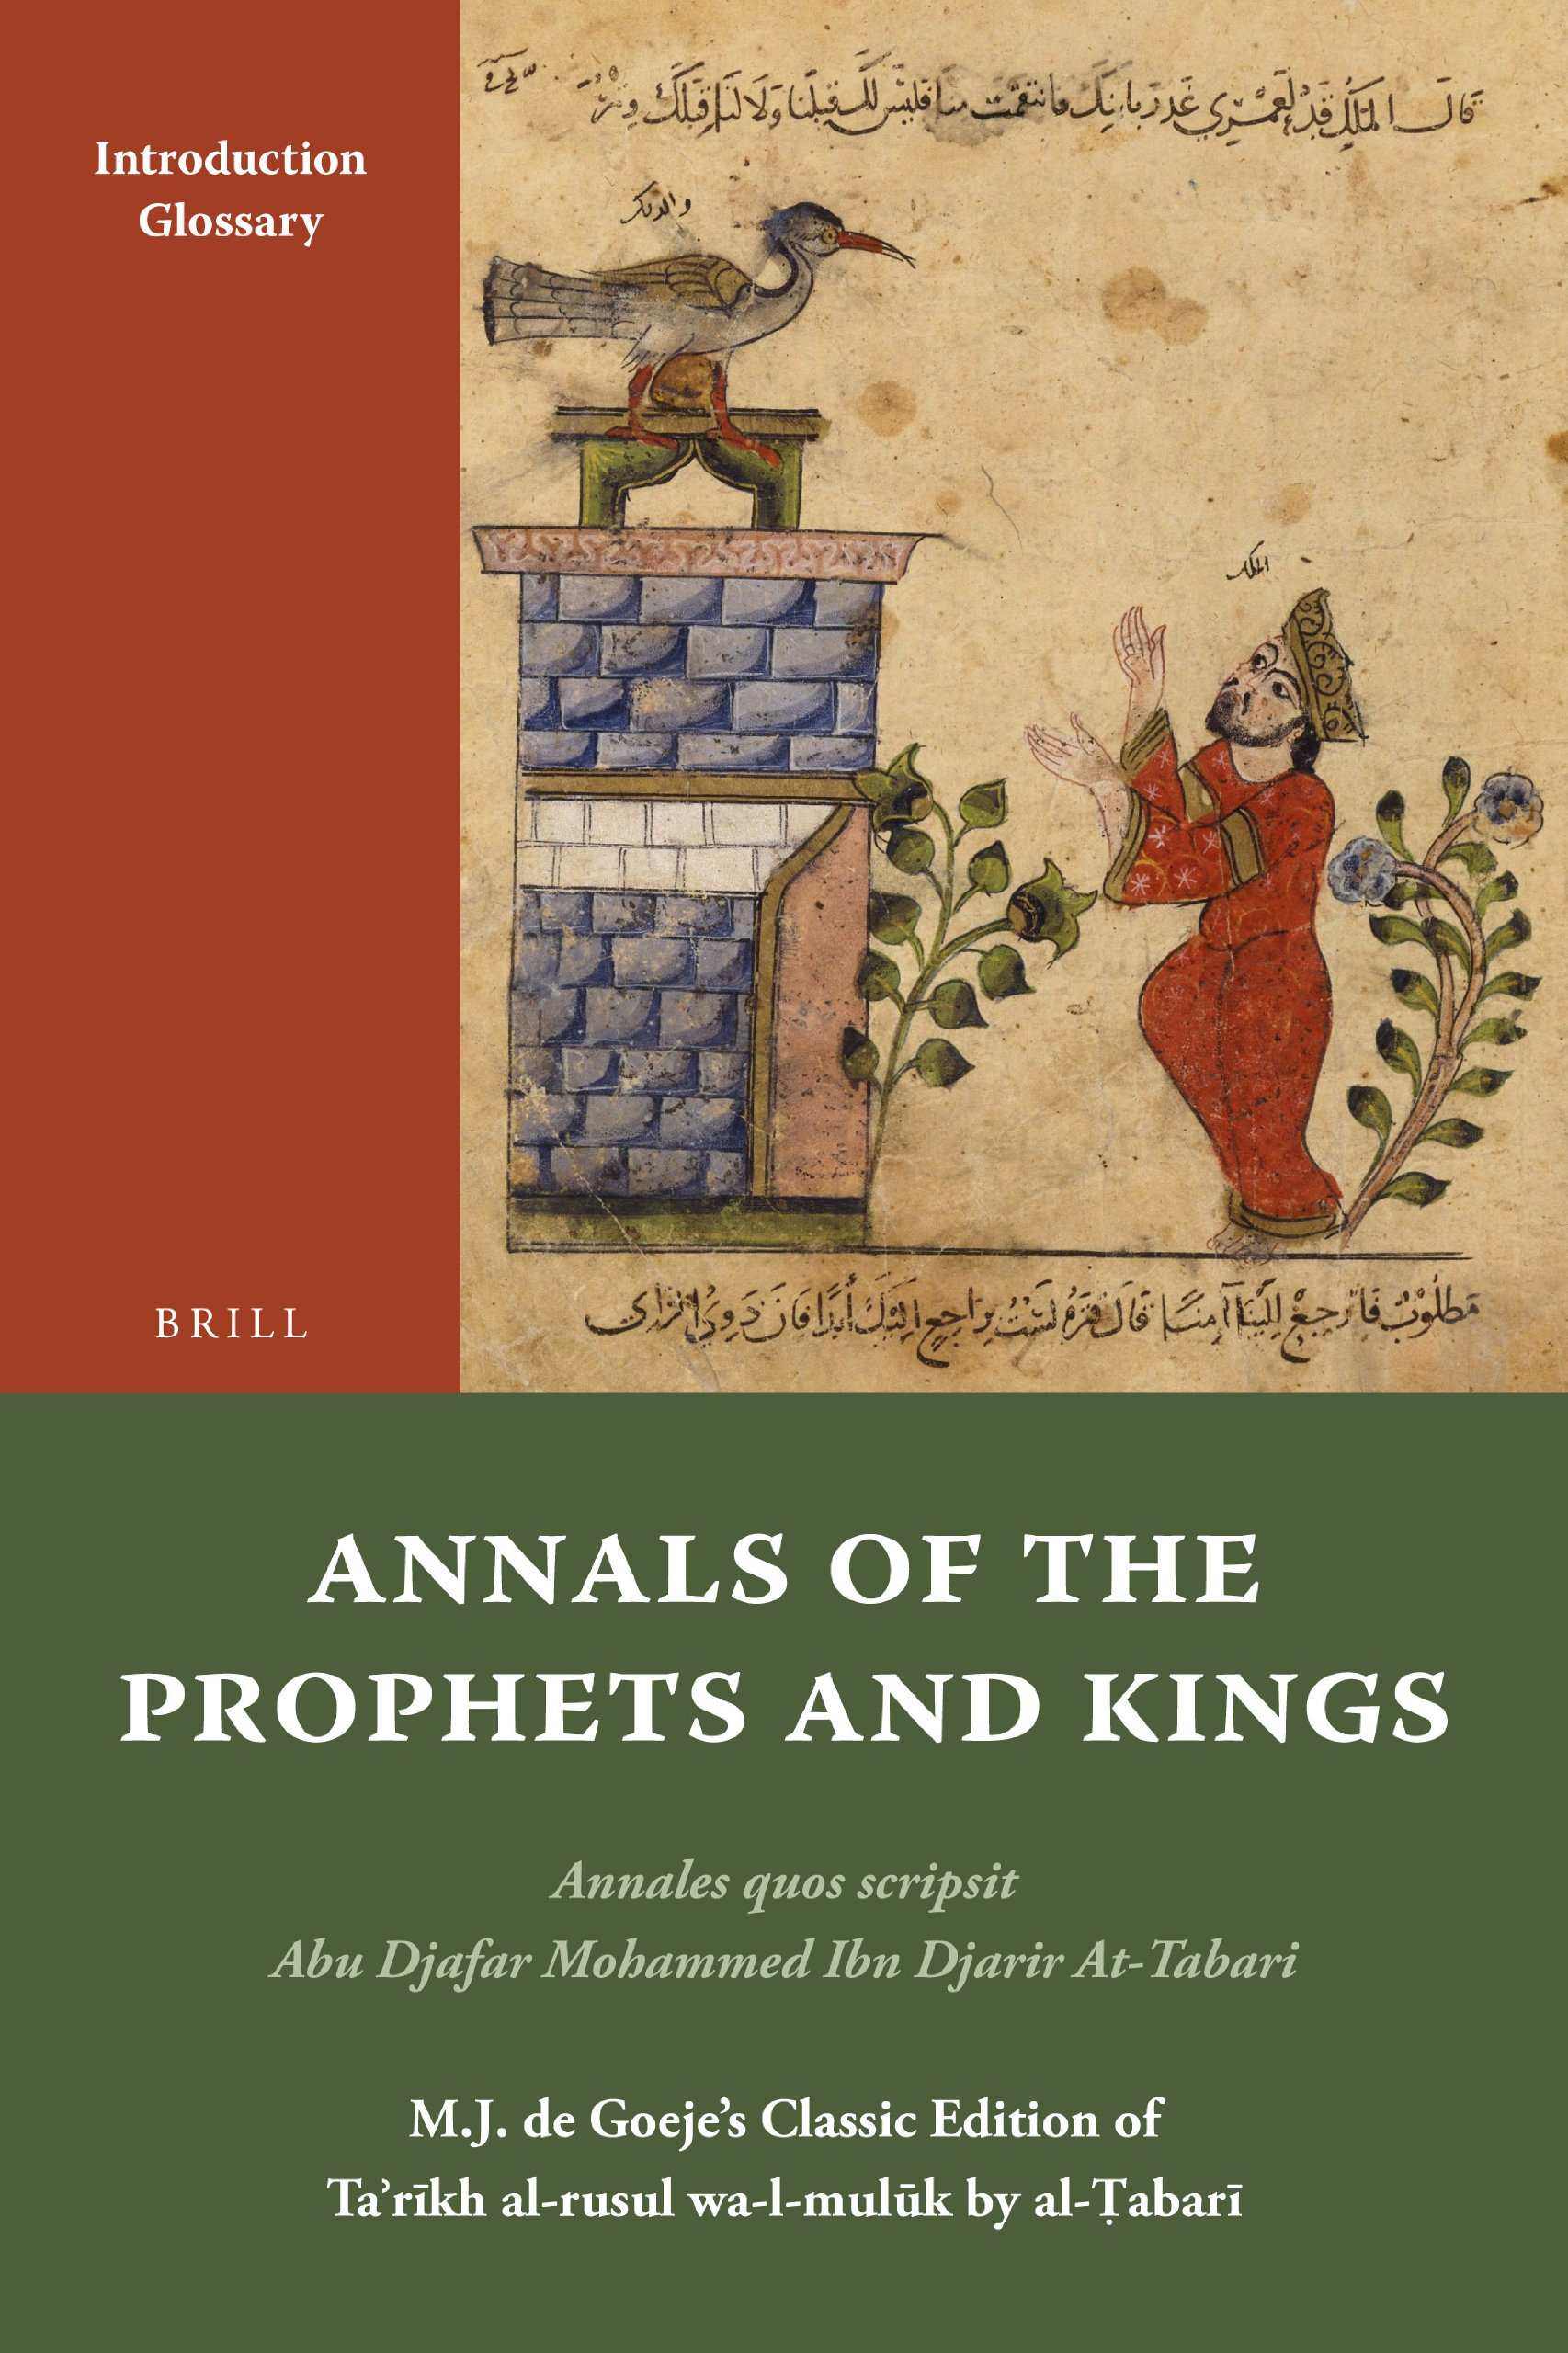 Buchcover At-Tabarī: "Geschichte der Propheten und Könige", Brill-Verlag 